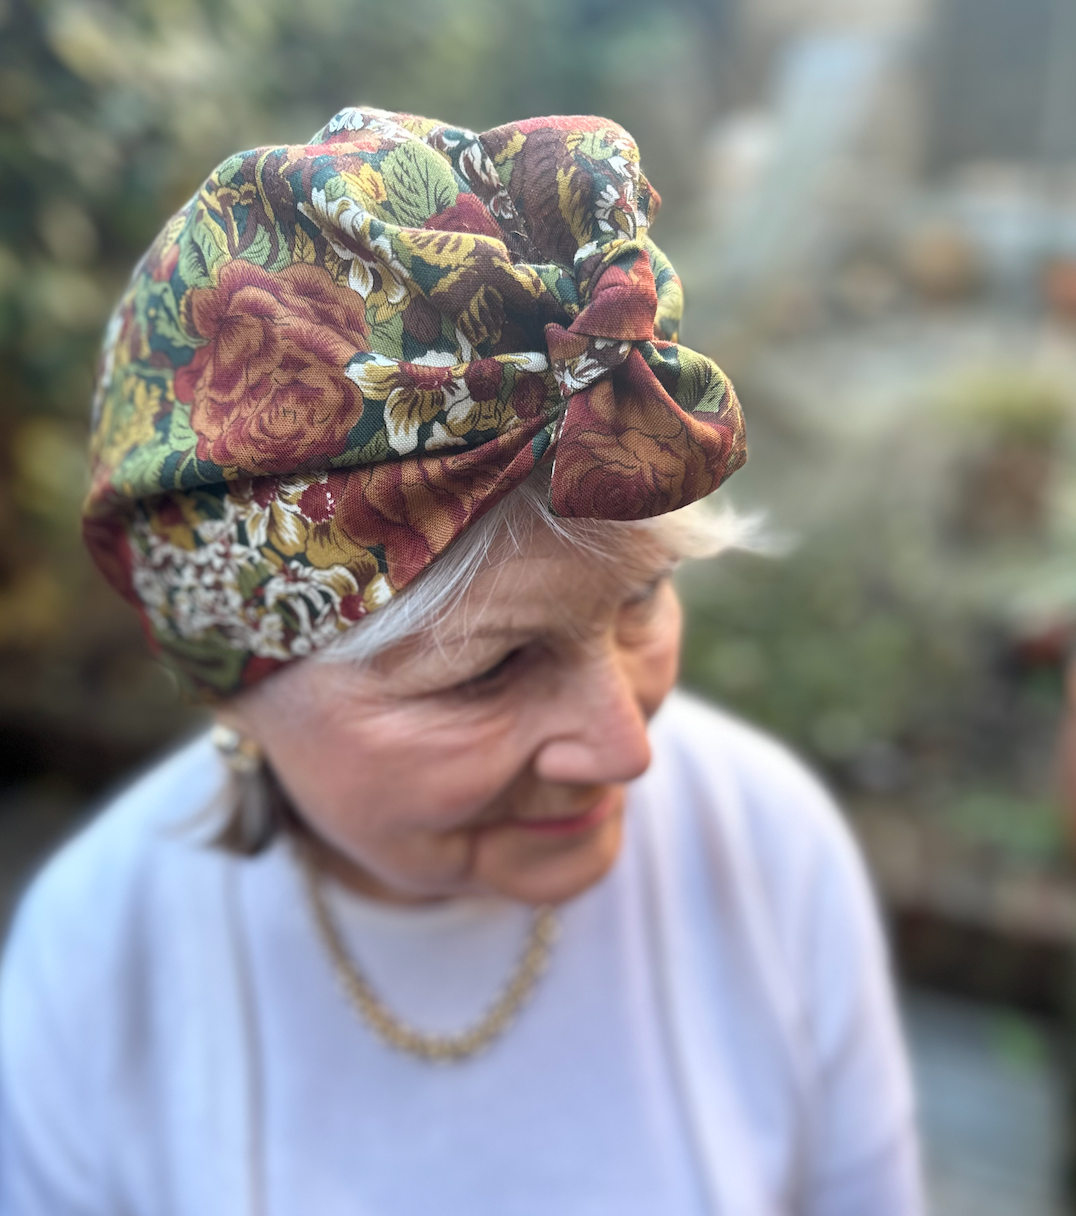 Ladies Turban Hat - Vintage Liberty of London Varuna Wool - Winter Floral in Rust Tones